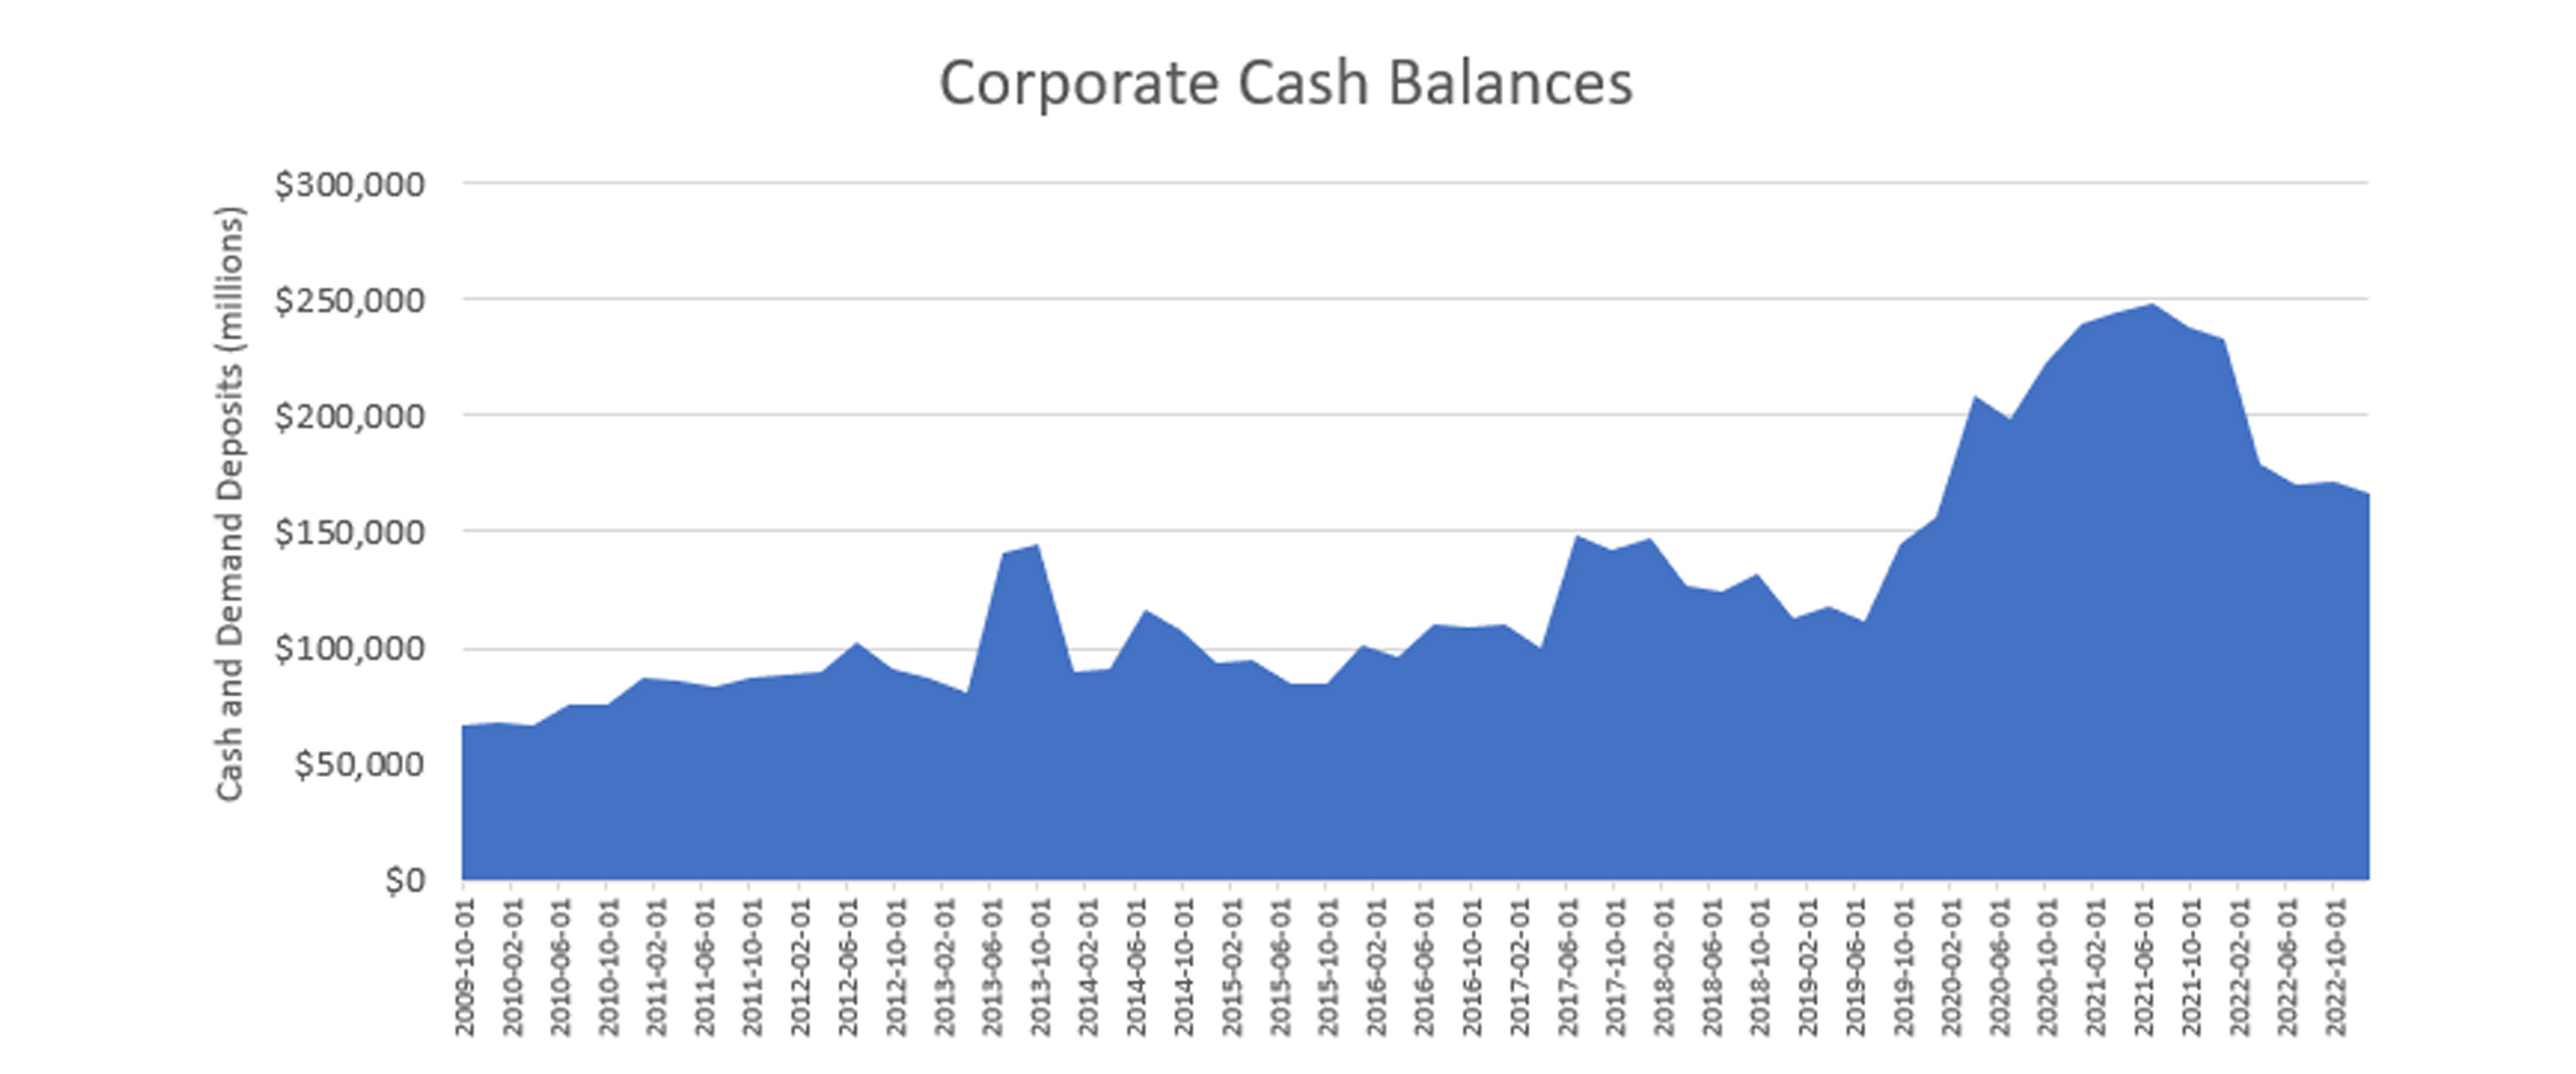 A chart showing Corporate Cash Balances